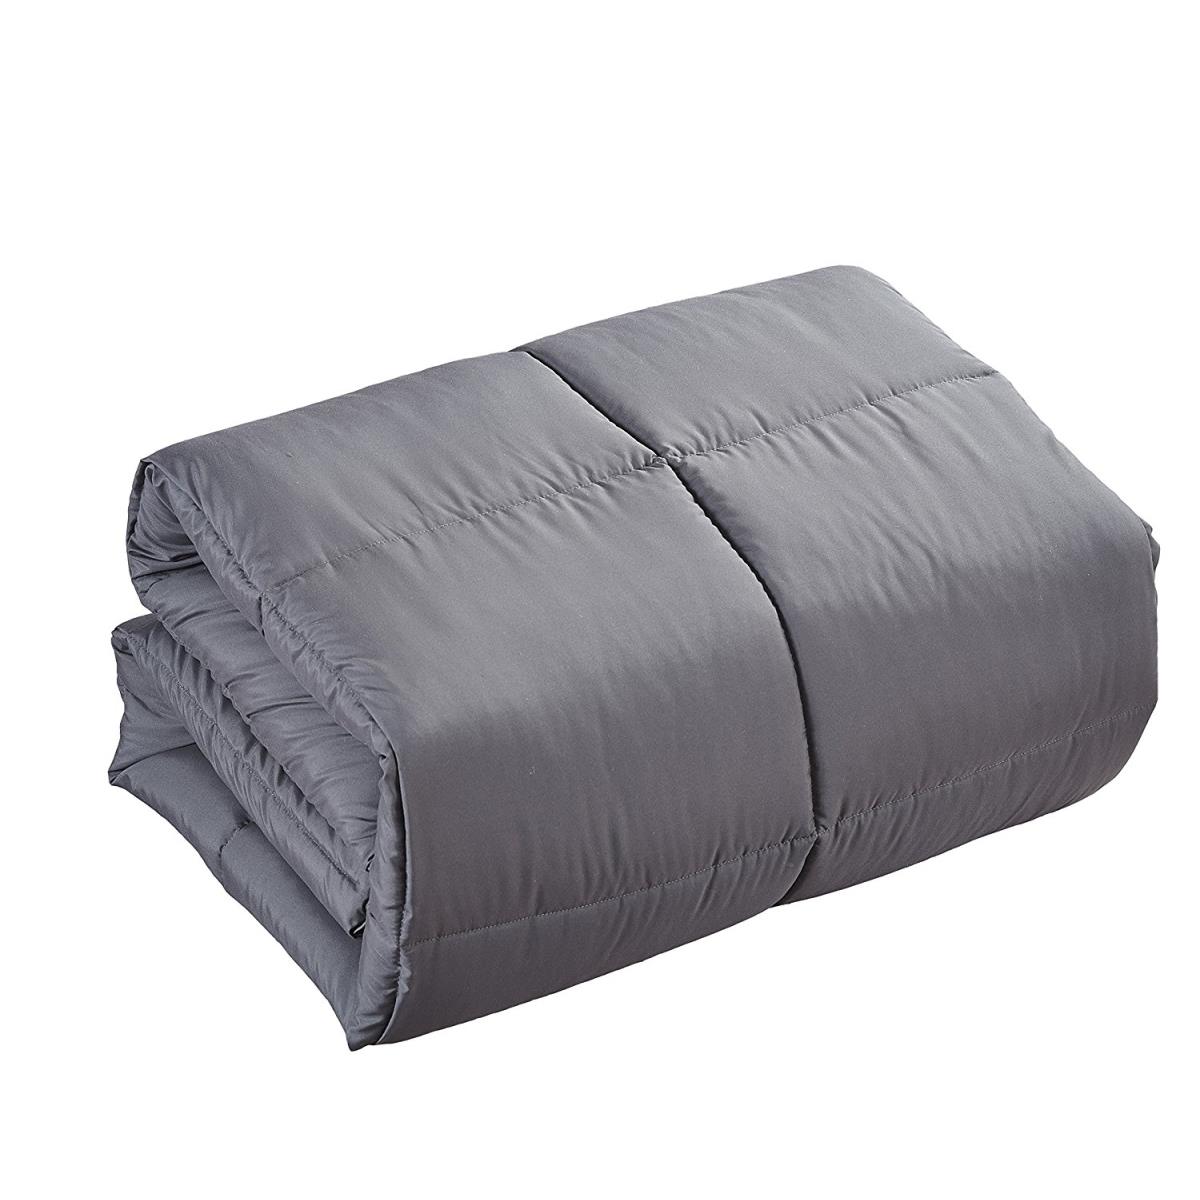 104 X 88 In. California & Eastern King Size Comforter Duvet Insert - Gray